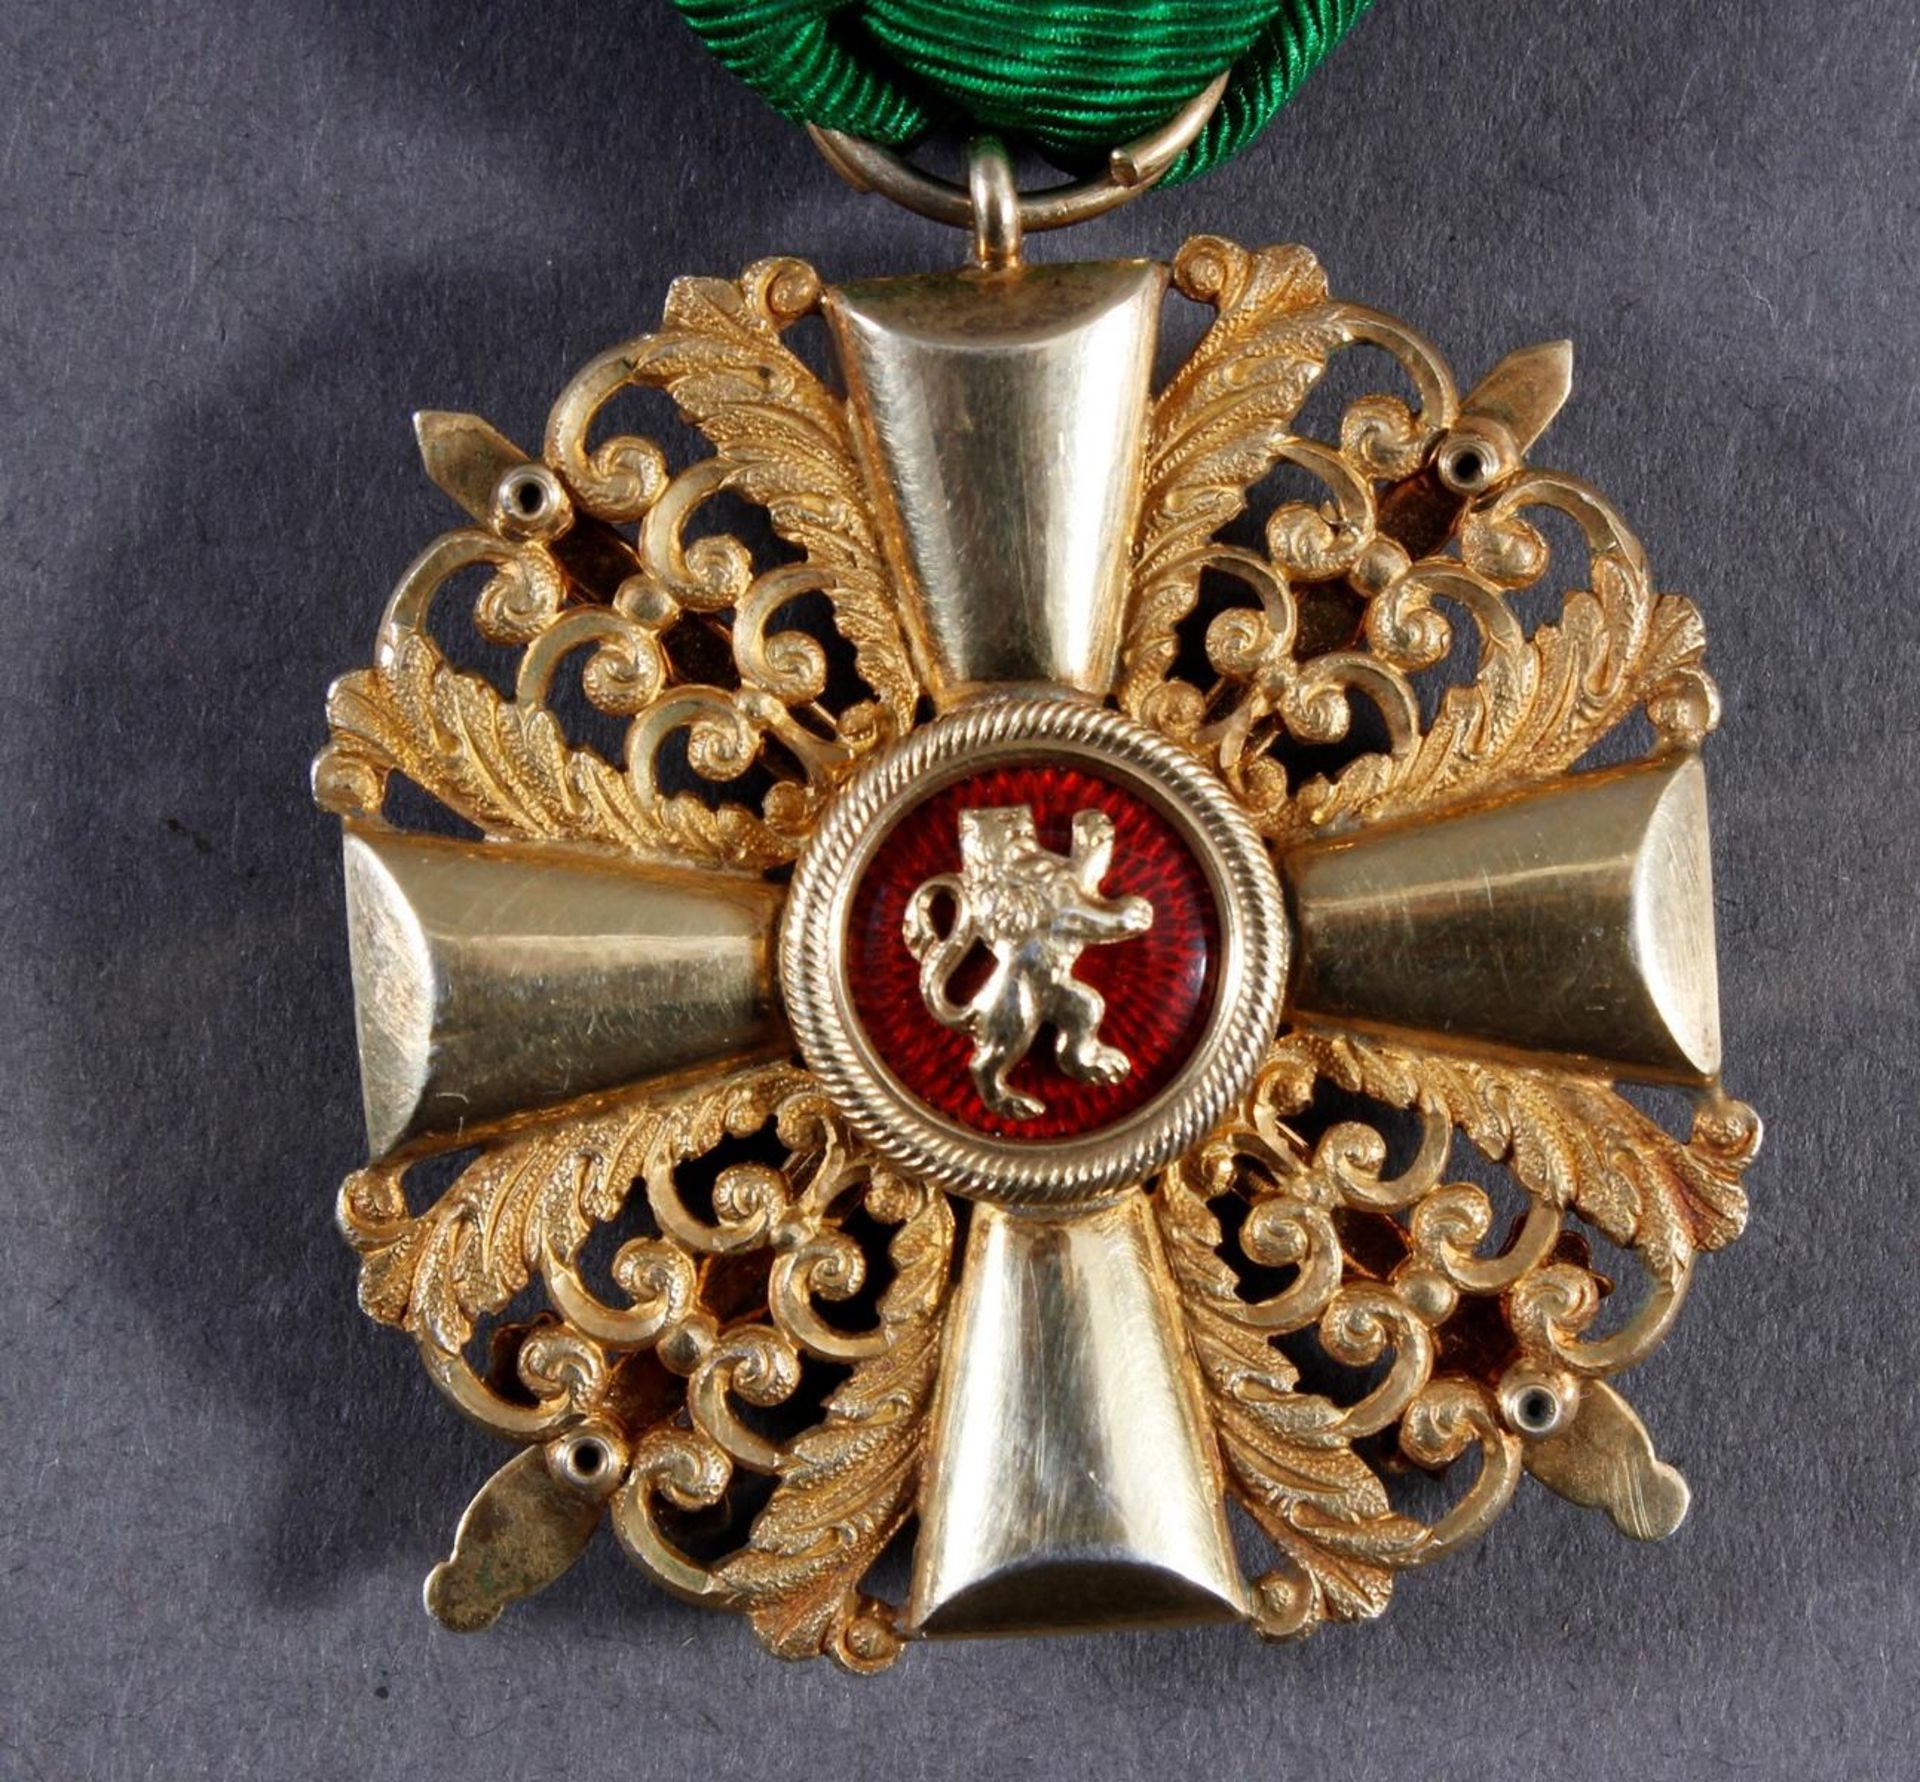 Baden: Ritterkreuz 1. Klasse mit Schwertern des Orden vom Zähringer Löwen - Image 4 of 4